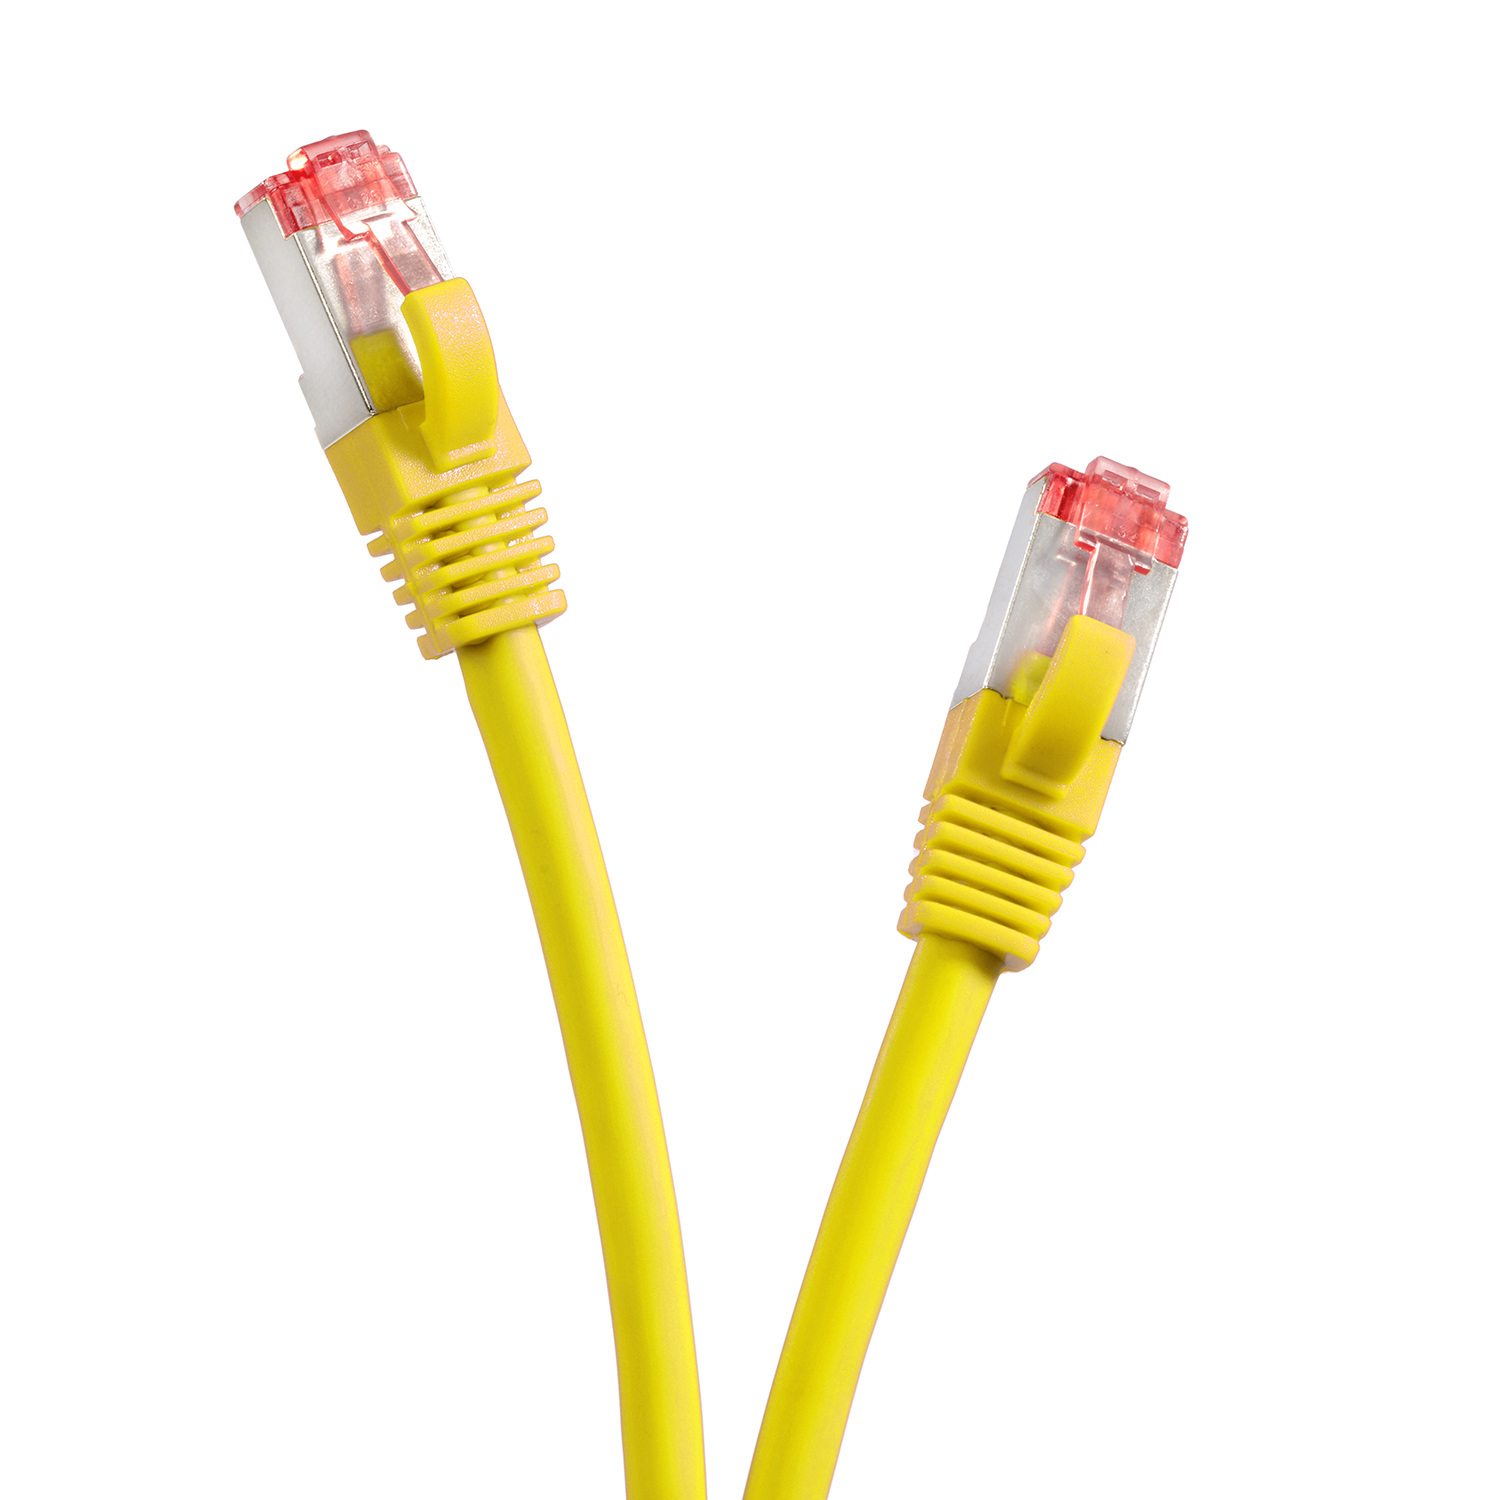 m 0,5 1000Mbit, Netzwerkkabel, gelb, Pack Netzwerkkabel / TPFNET S/FTP 0,50m 5er Patchkabel